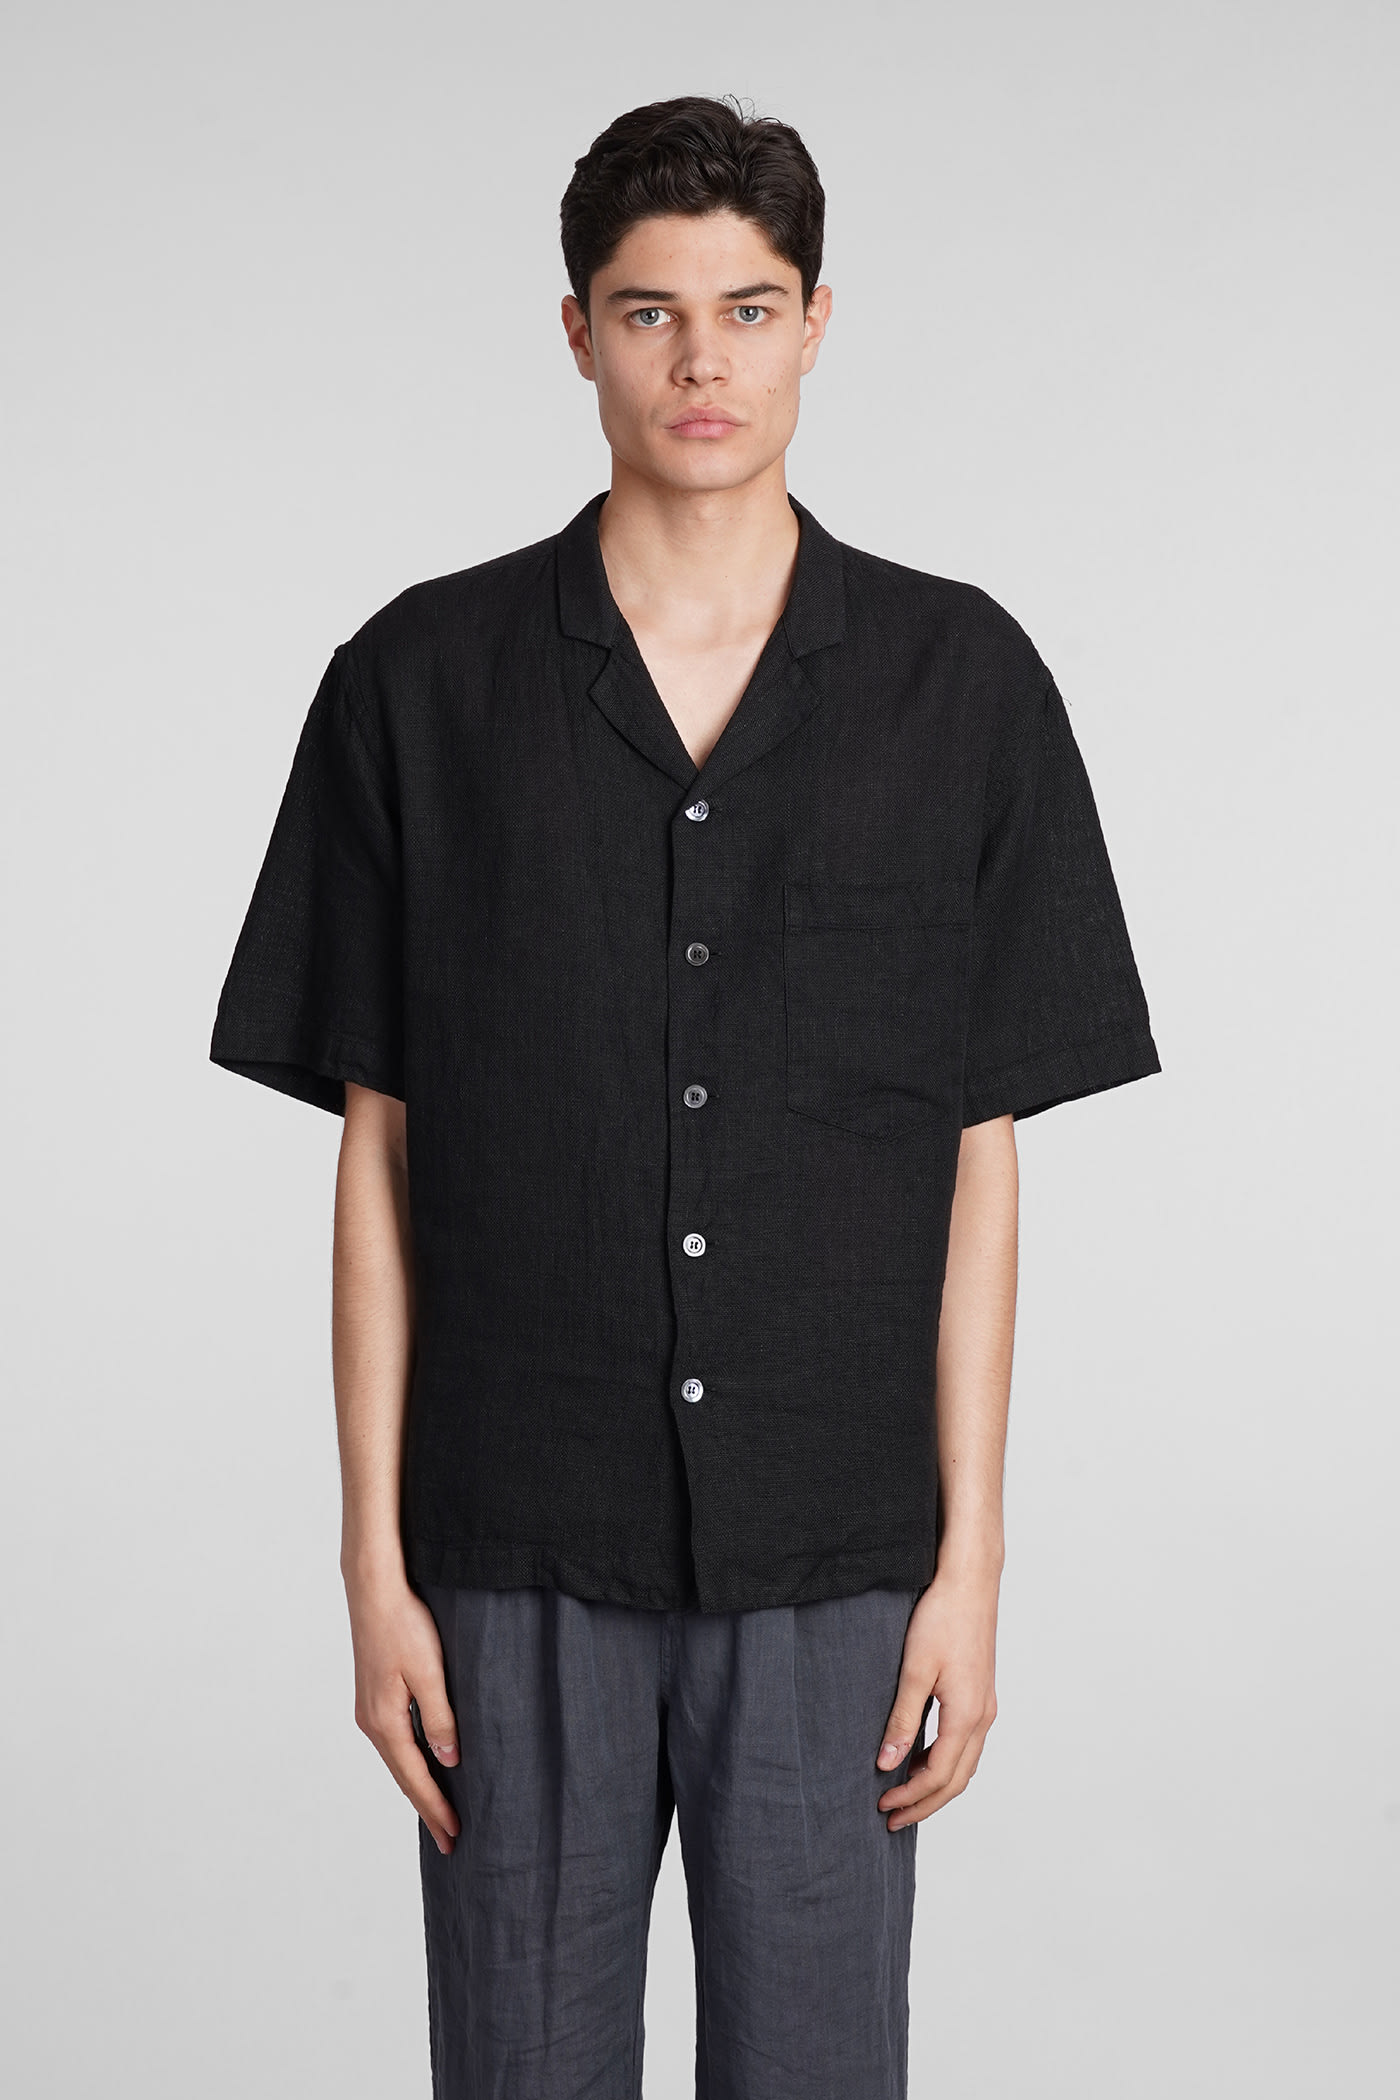 Bagolo Shirt In Black Linen